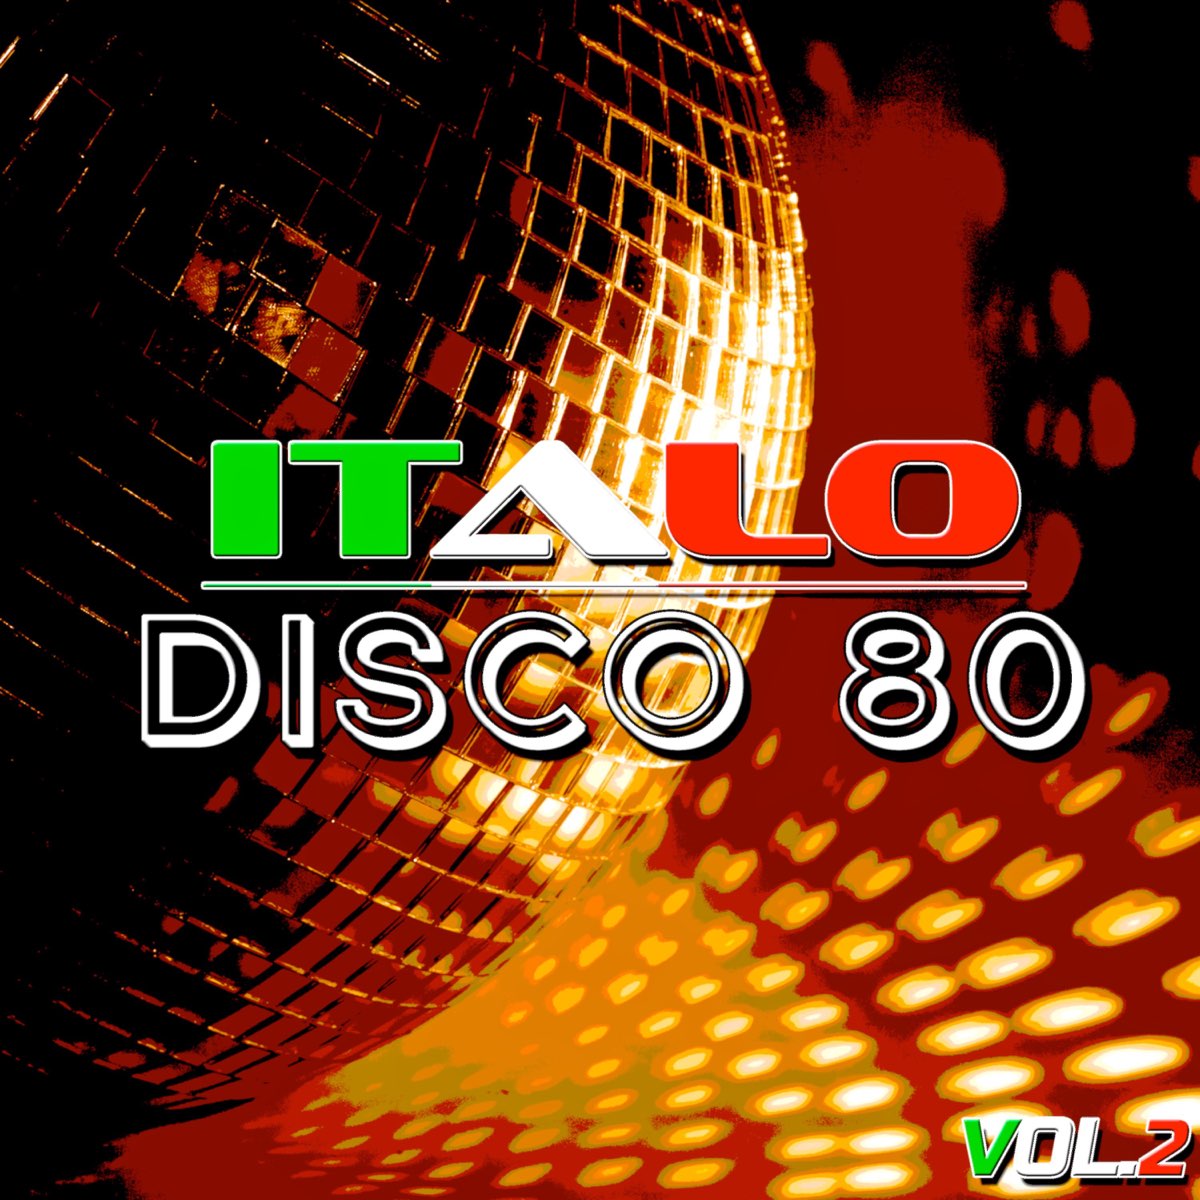 Итальянский диско слушать. Итало диско. Итало диско 80. Итальянское диско. Итальянское диско 80.